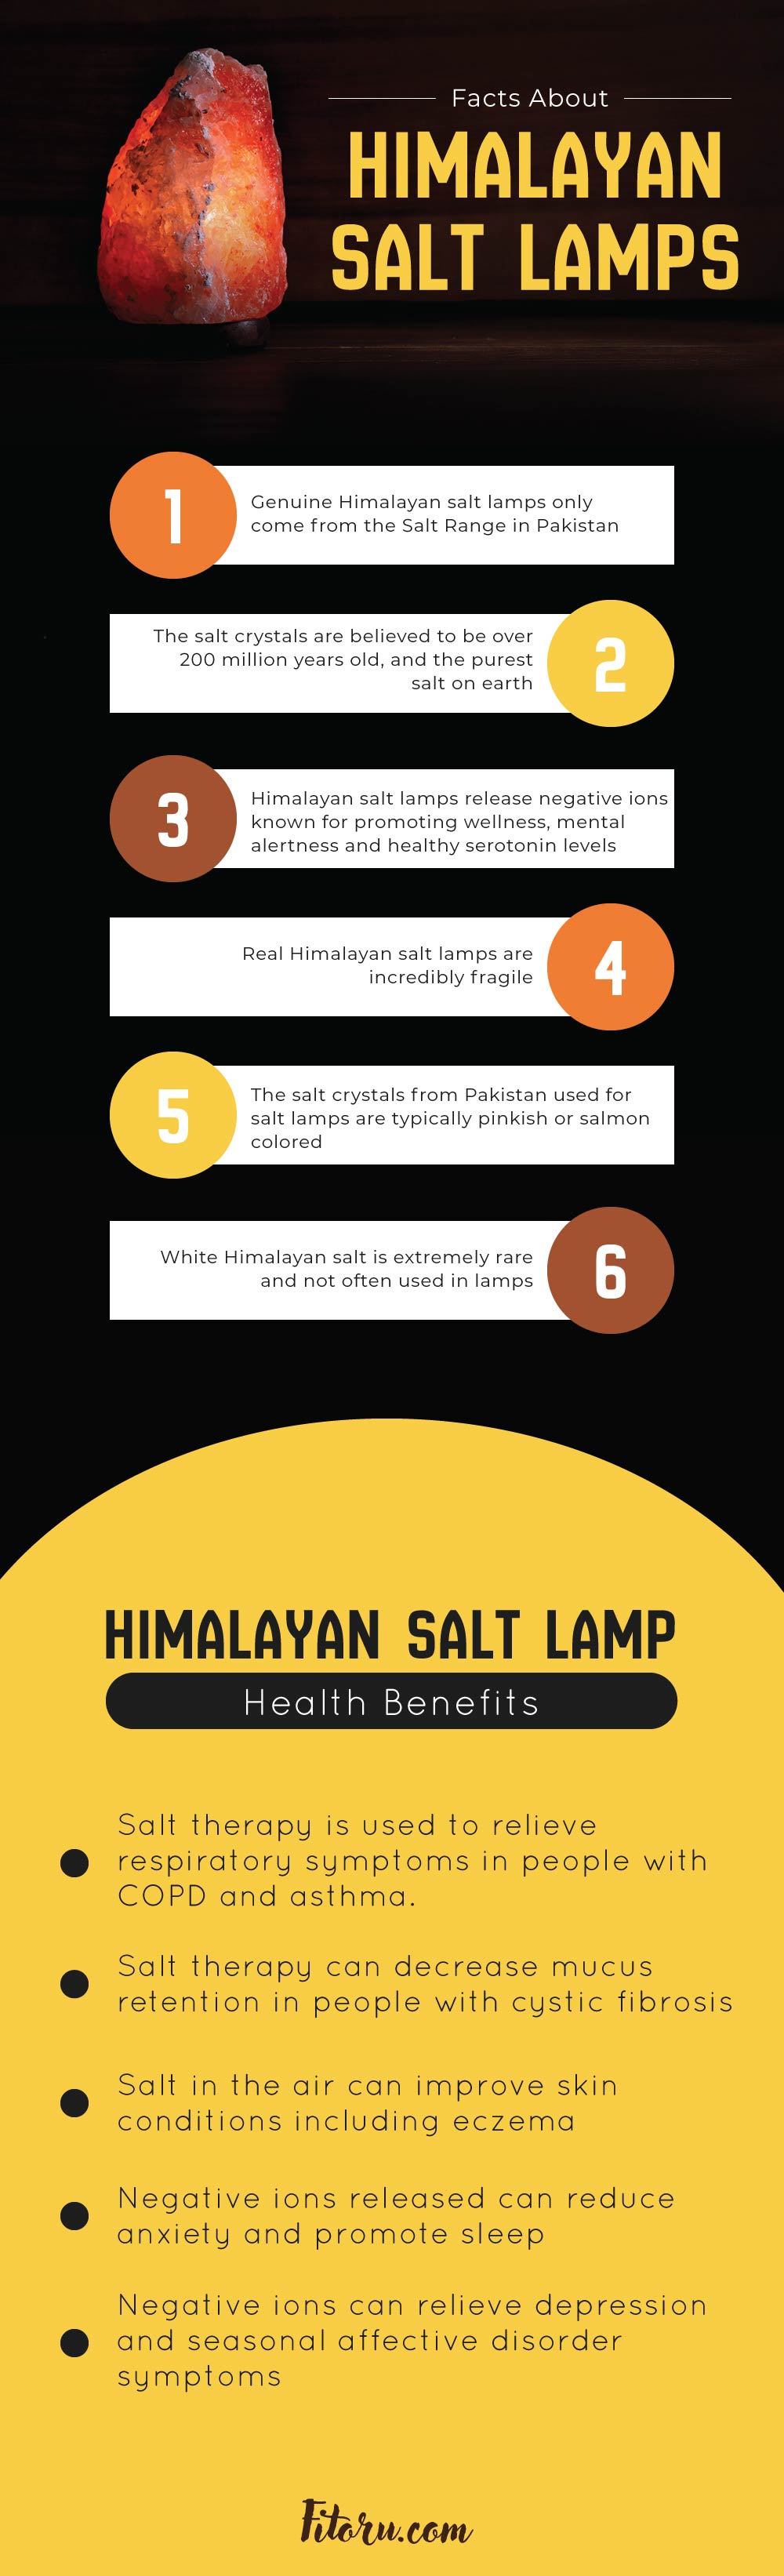 Facts About Himalayan Salt Lamps